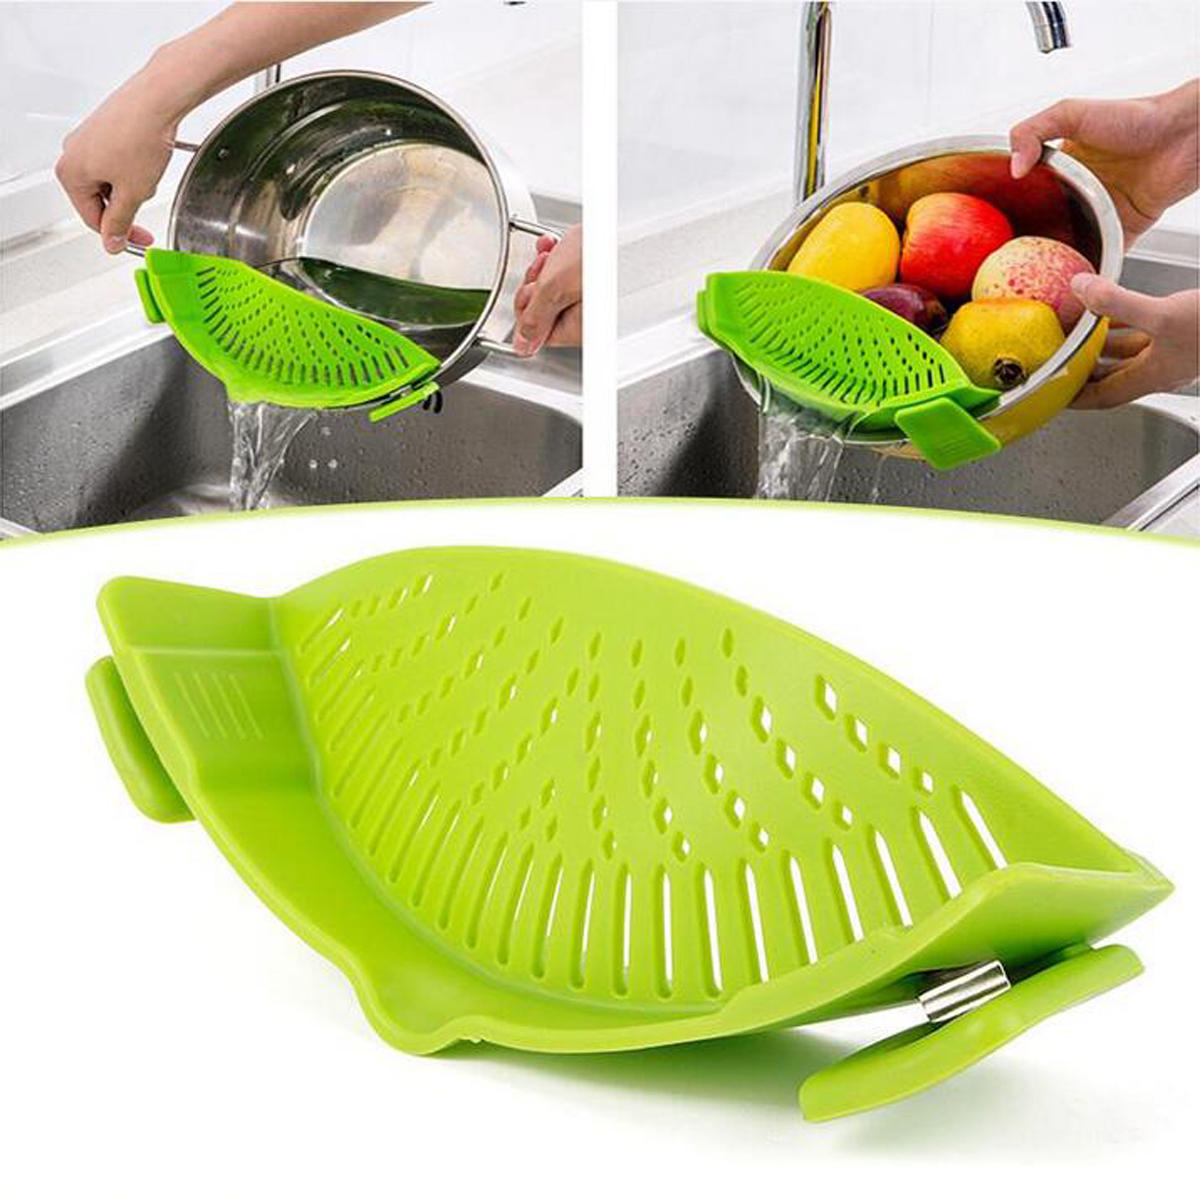 IPRee® Durable Silikon Pan Sieb Siebe Waschen Obst Gemüse Pasta Kitchen Tools Gadgets Waschbeutel